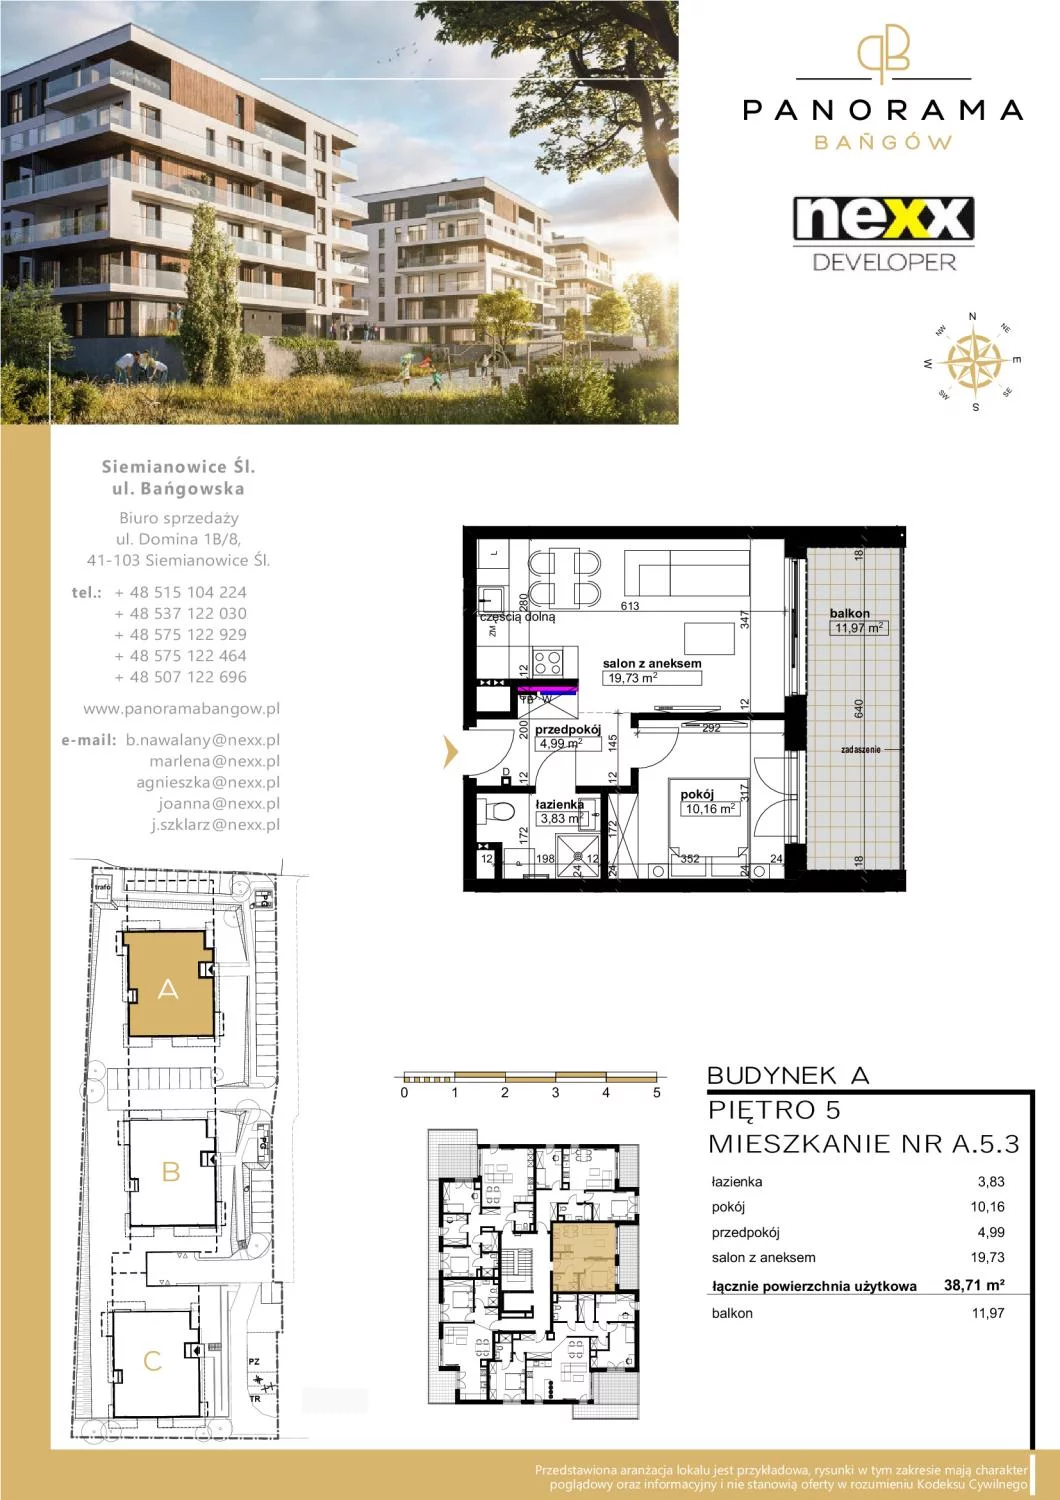 Mieszkanie 38,71 m², piętro 5, oferta nr A 5.3, Panorama Bańgów, Siemianowice Śląskie, Bańgów, ul. Bańgowska